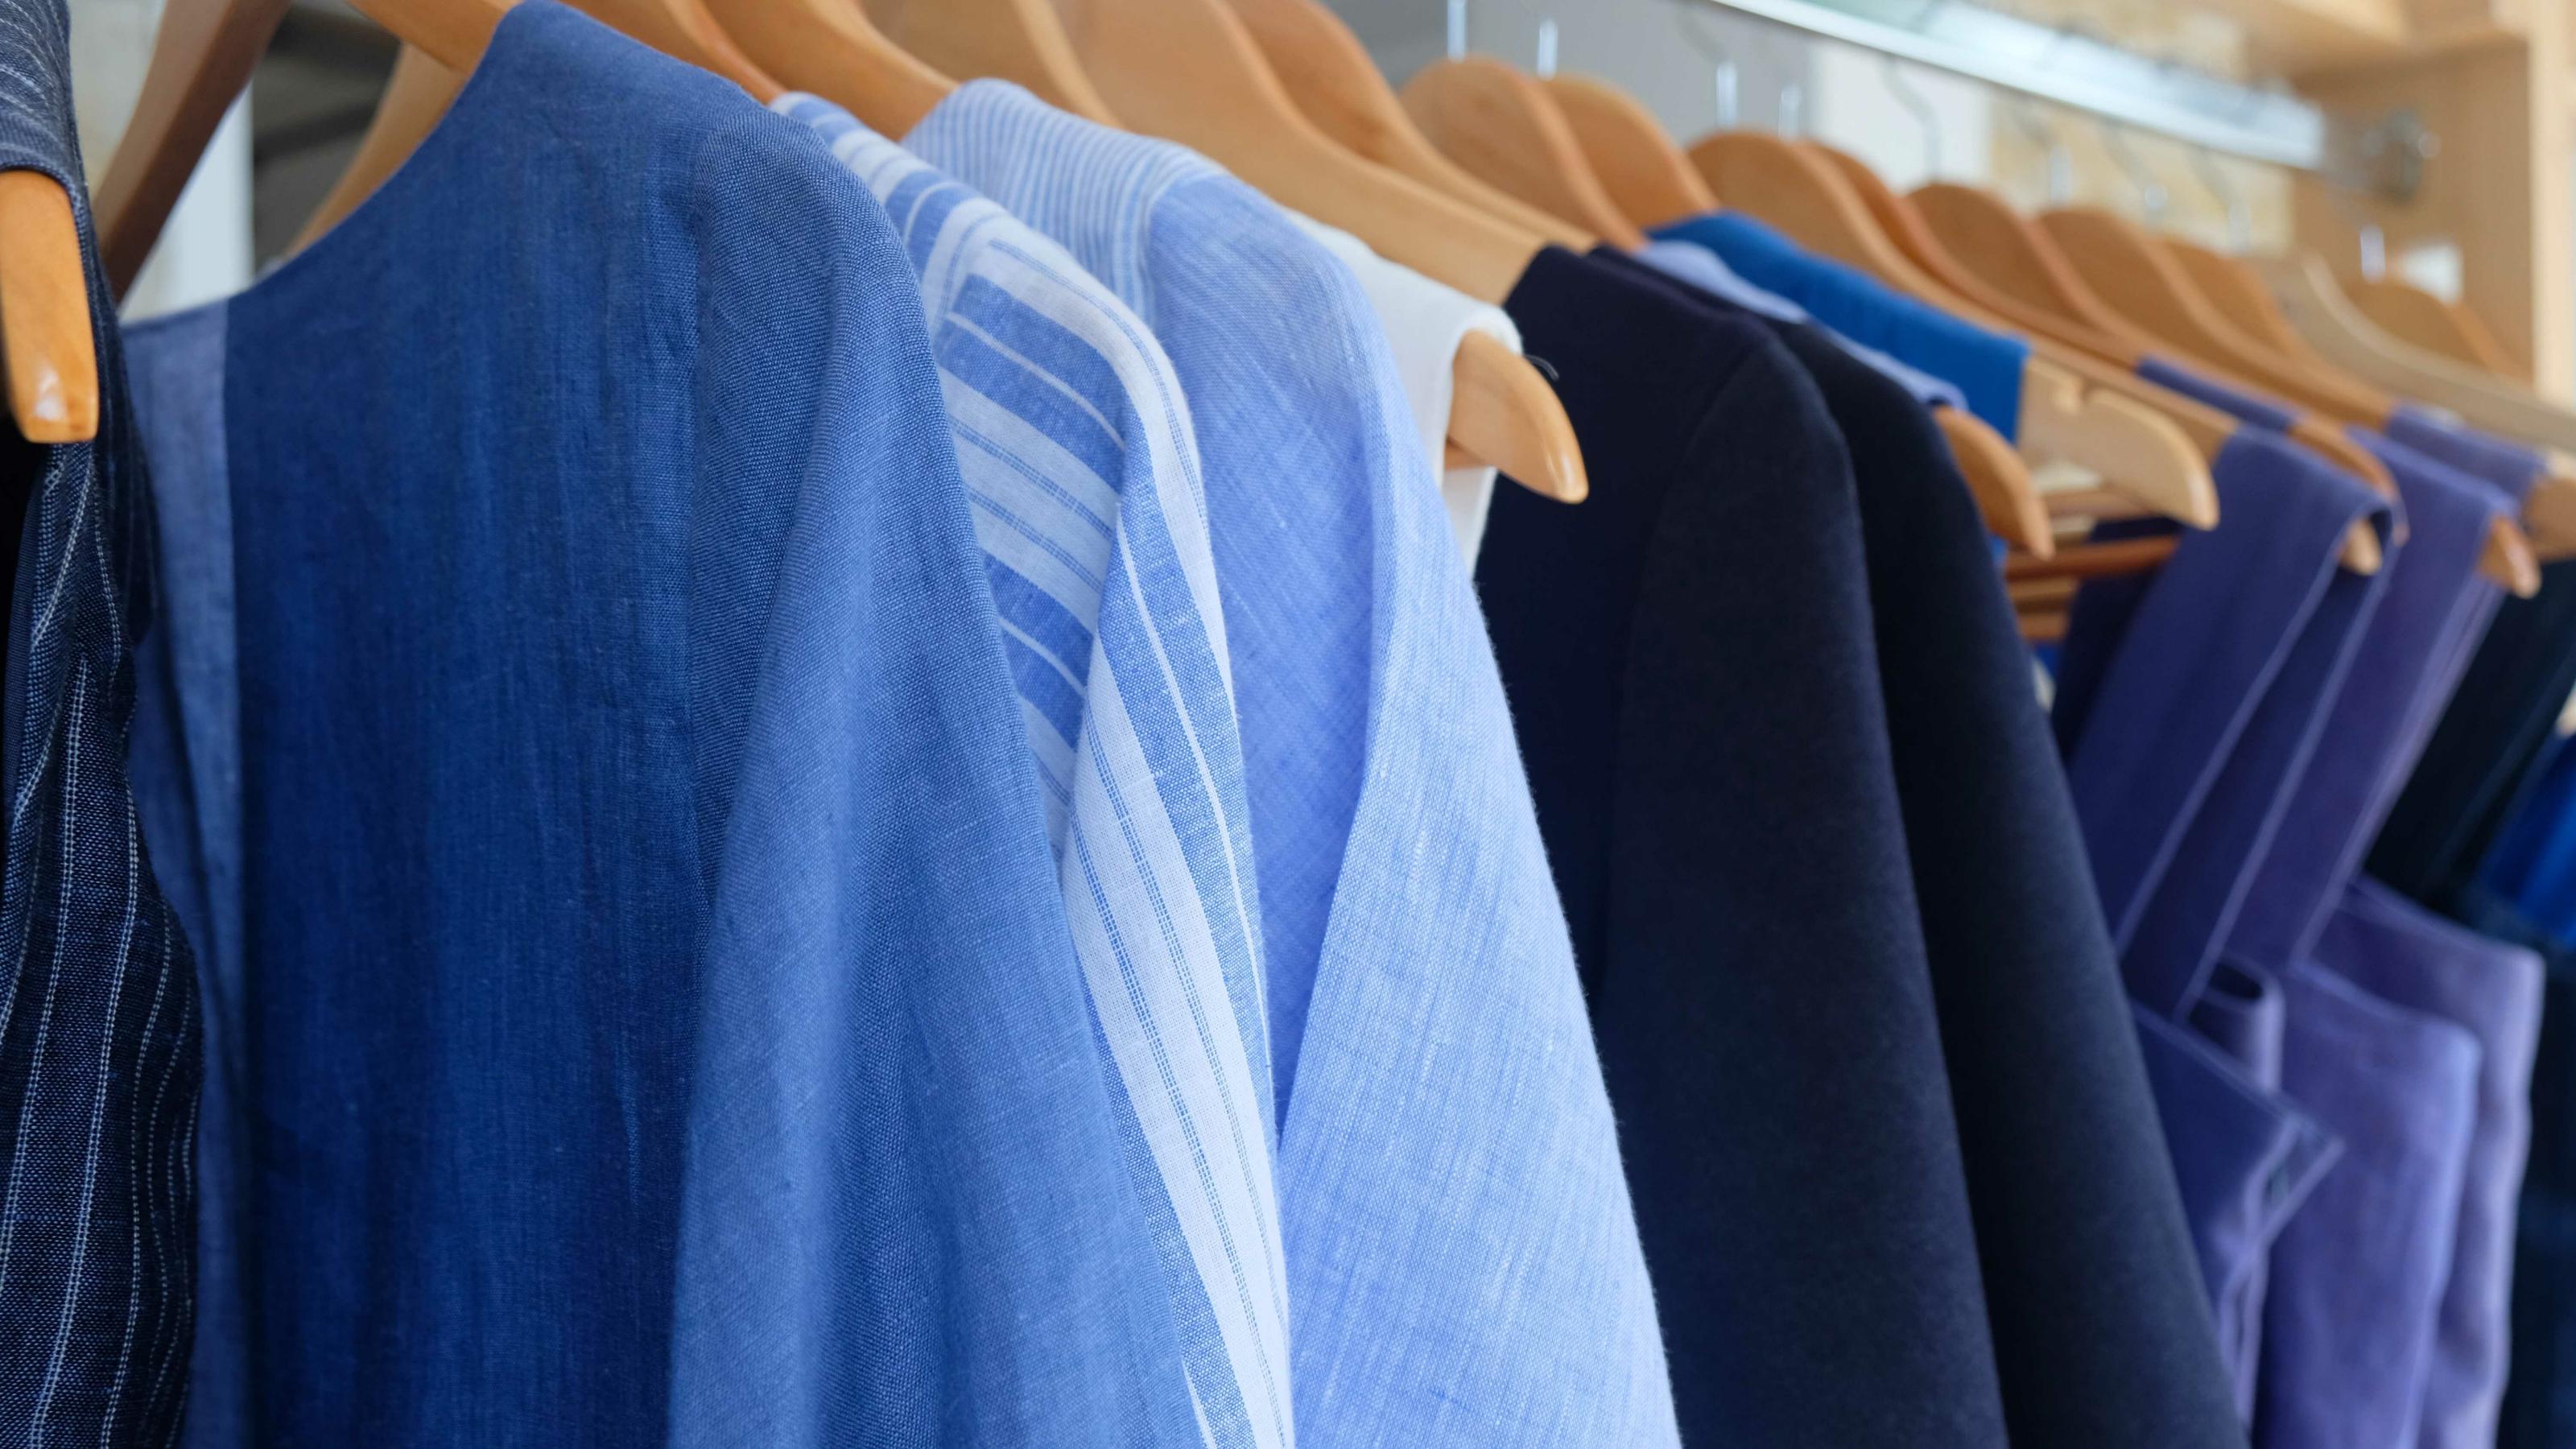 Kleidung in verschiedenen Blautönen hängt auf einer Stange